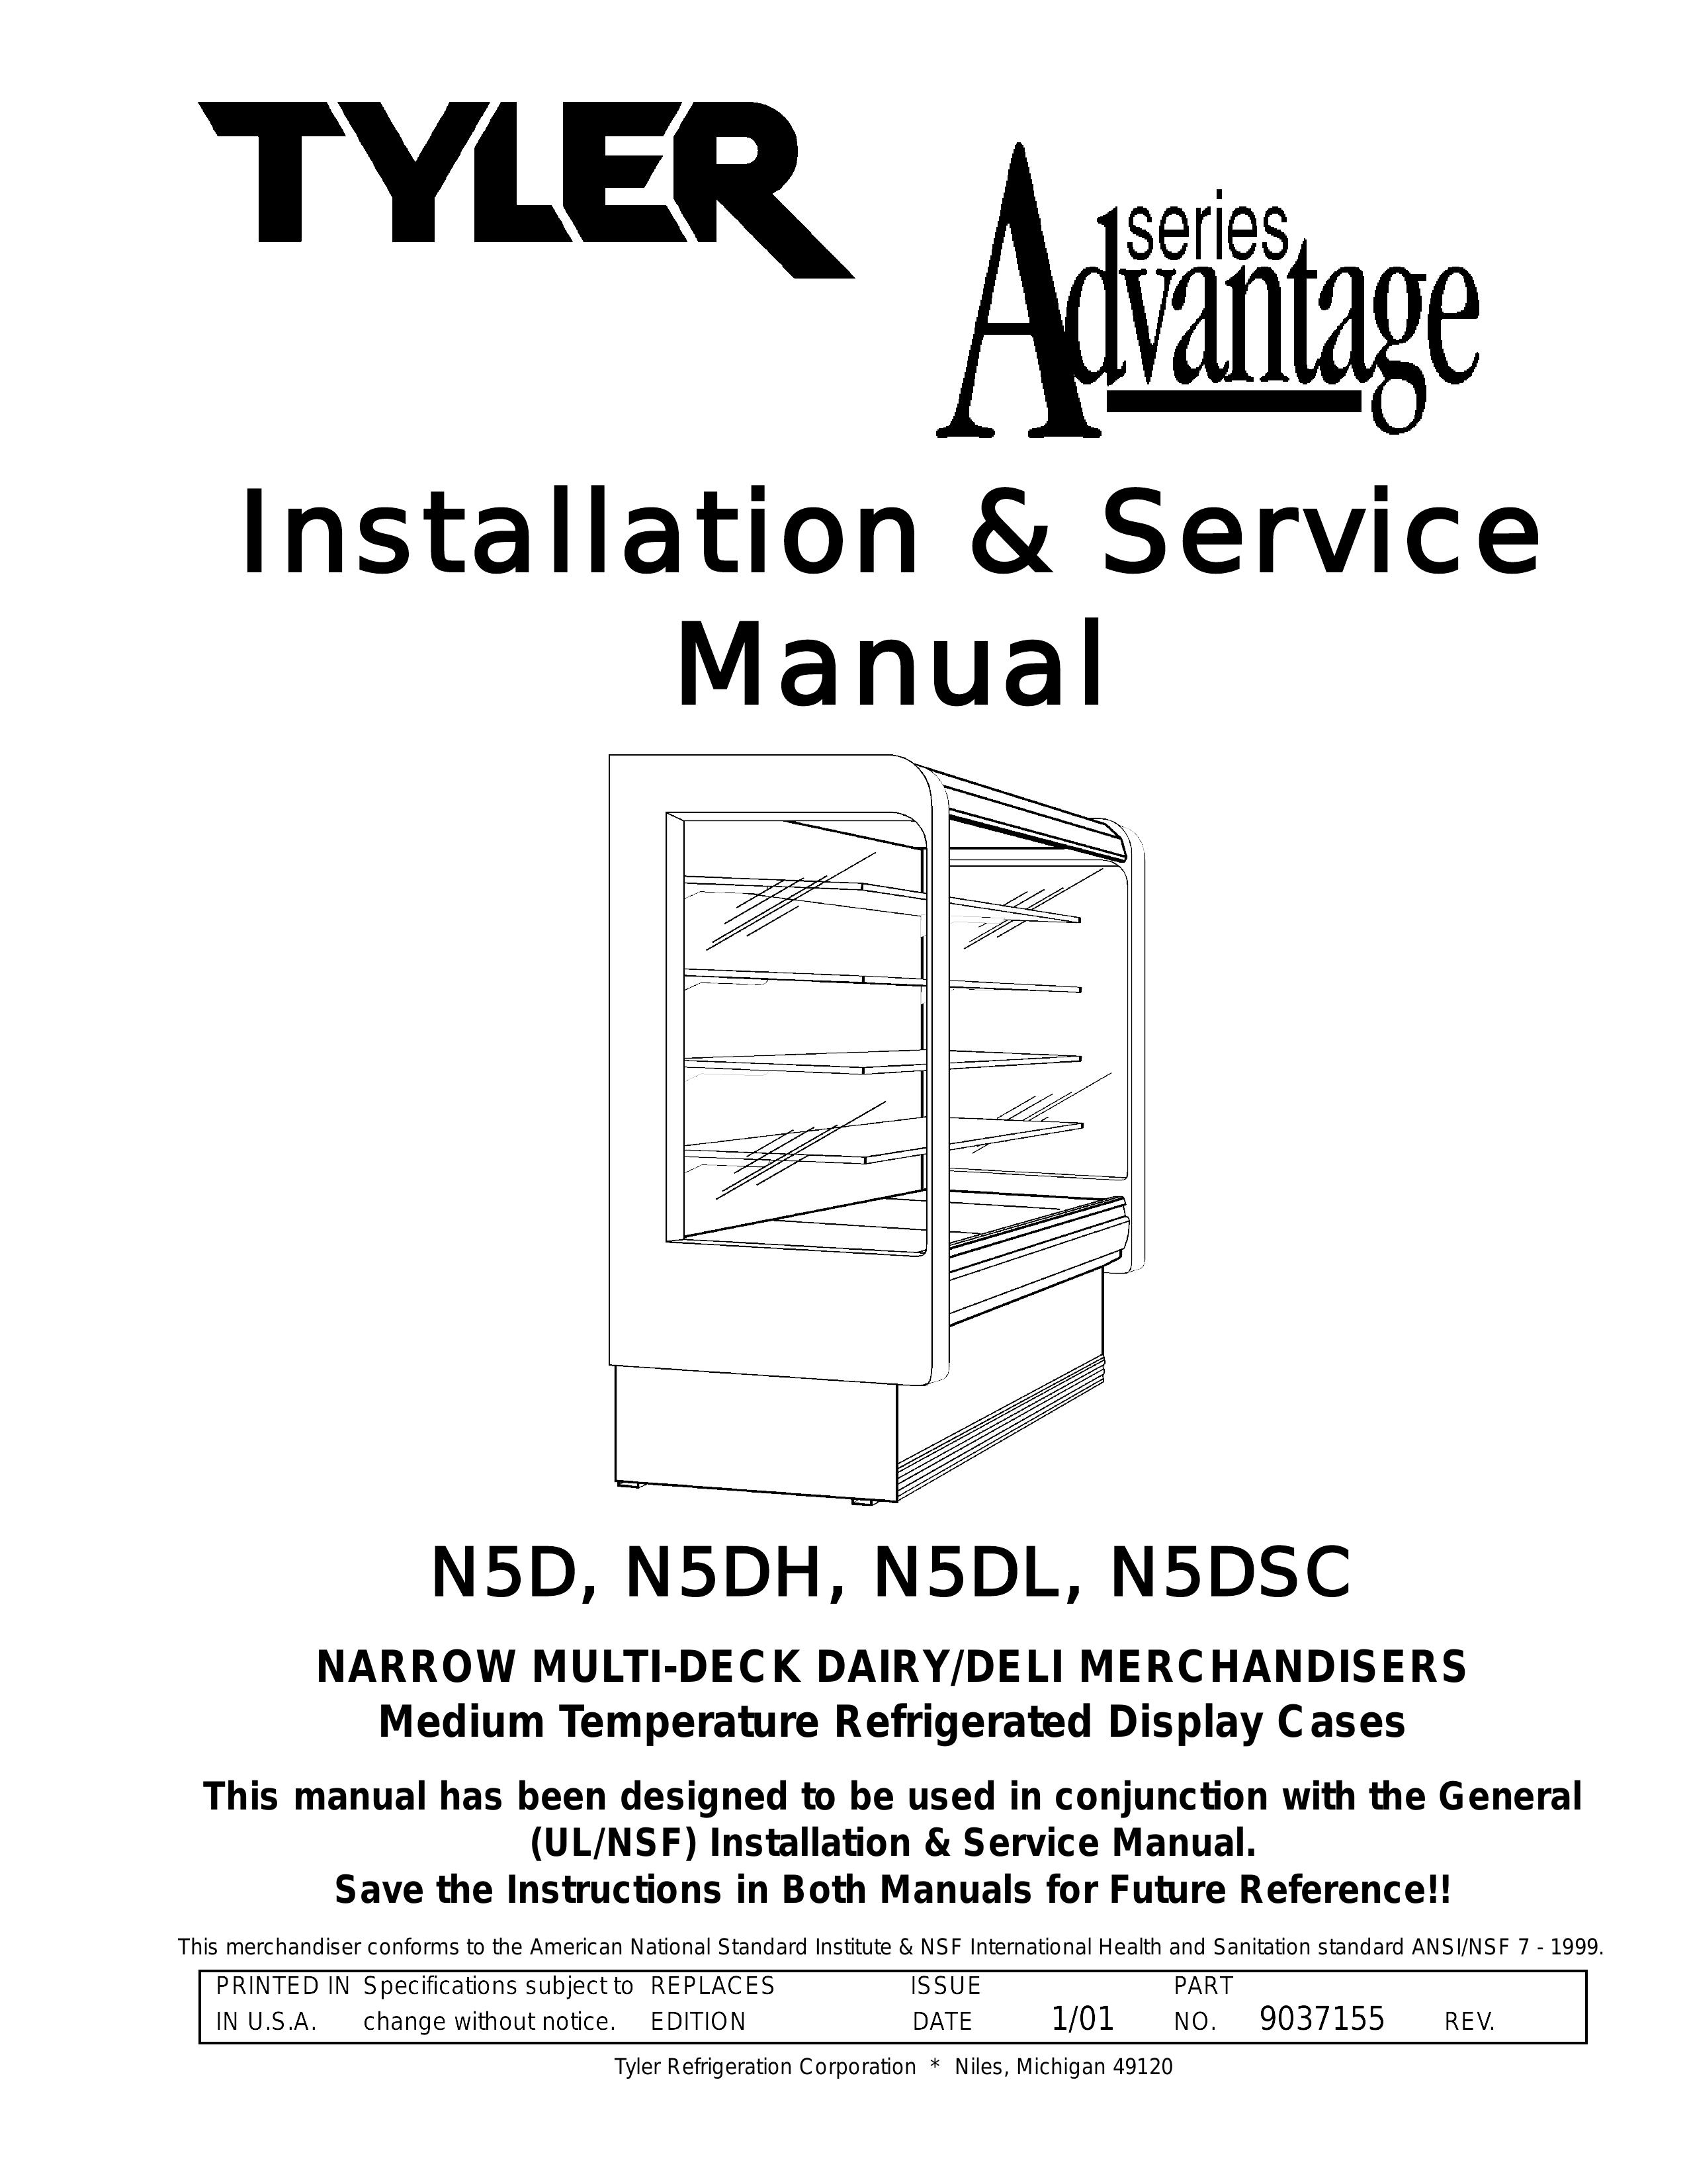 Tyler Refrigeration N5DL Refrigerator User Manual